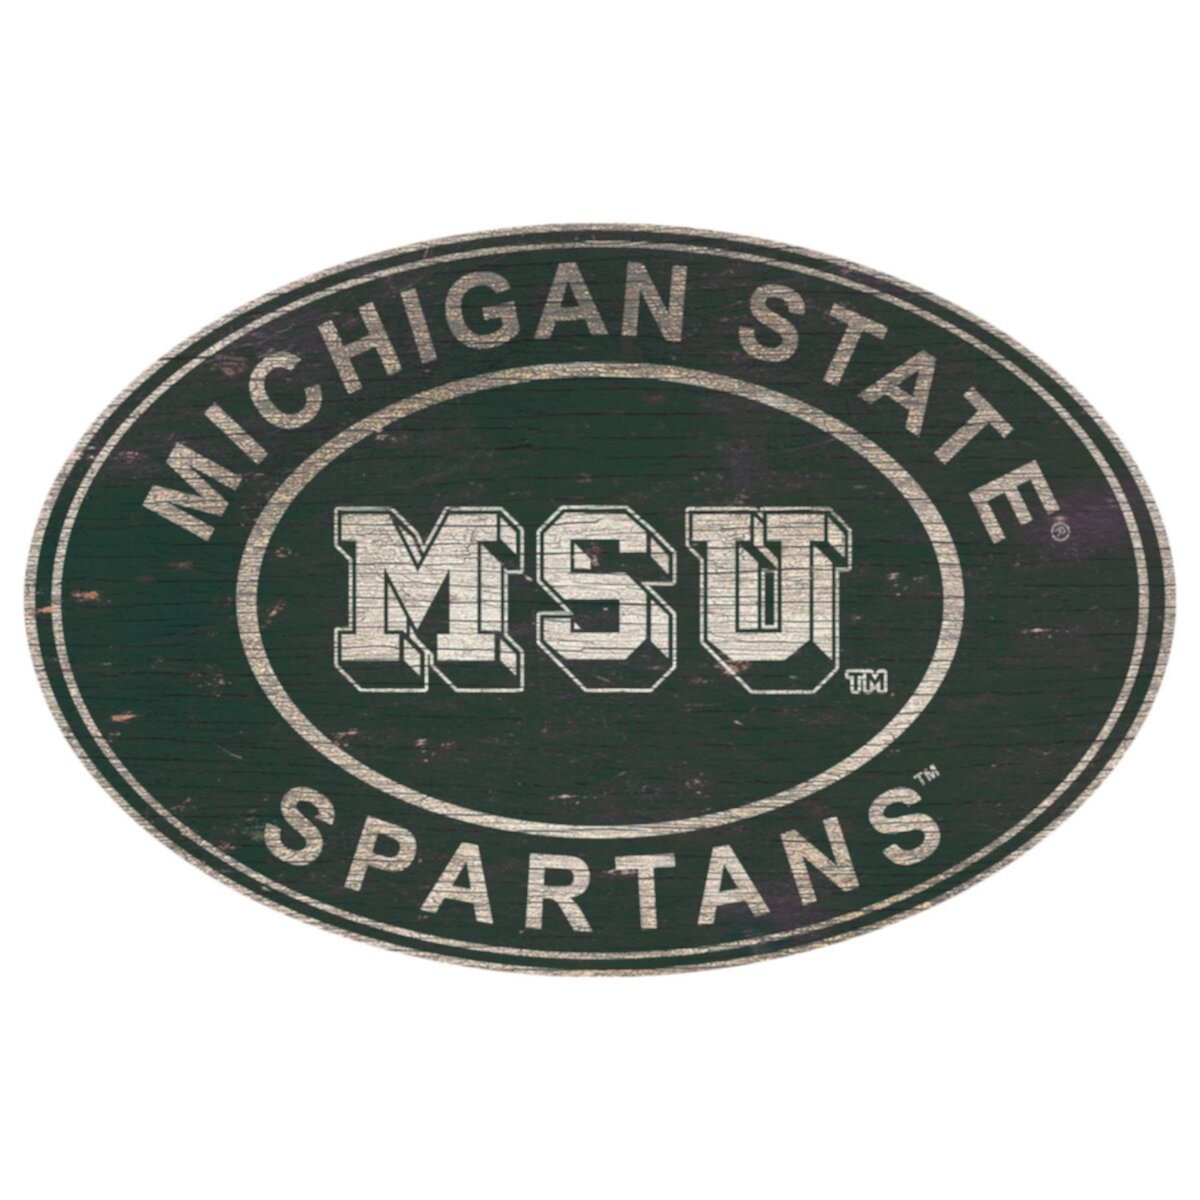 Овальный настенный знак "Спартанское наследие штата Мичиган" Fan Creations